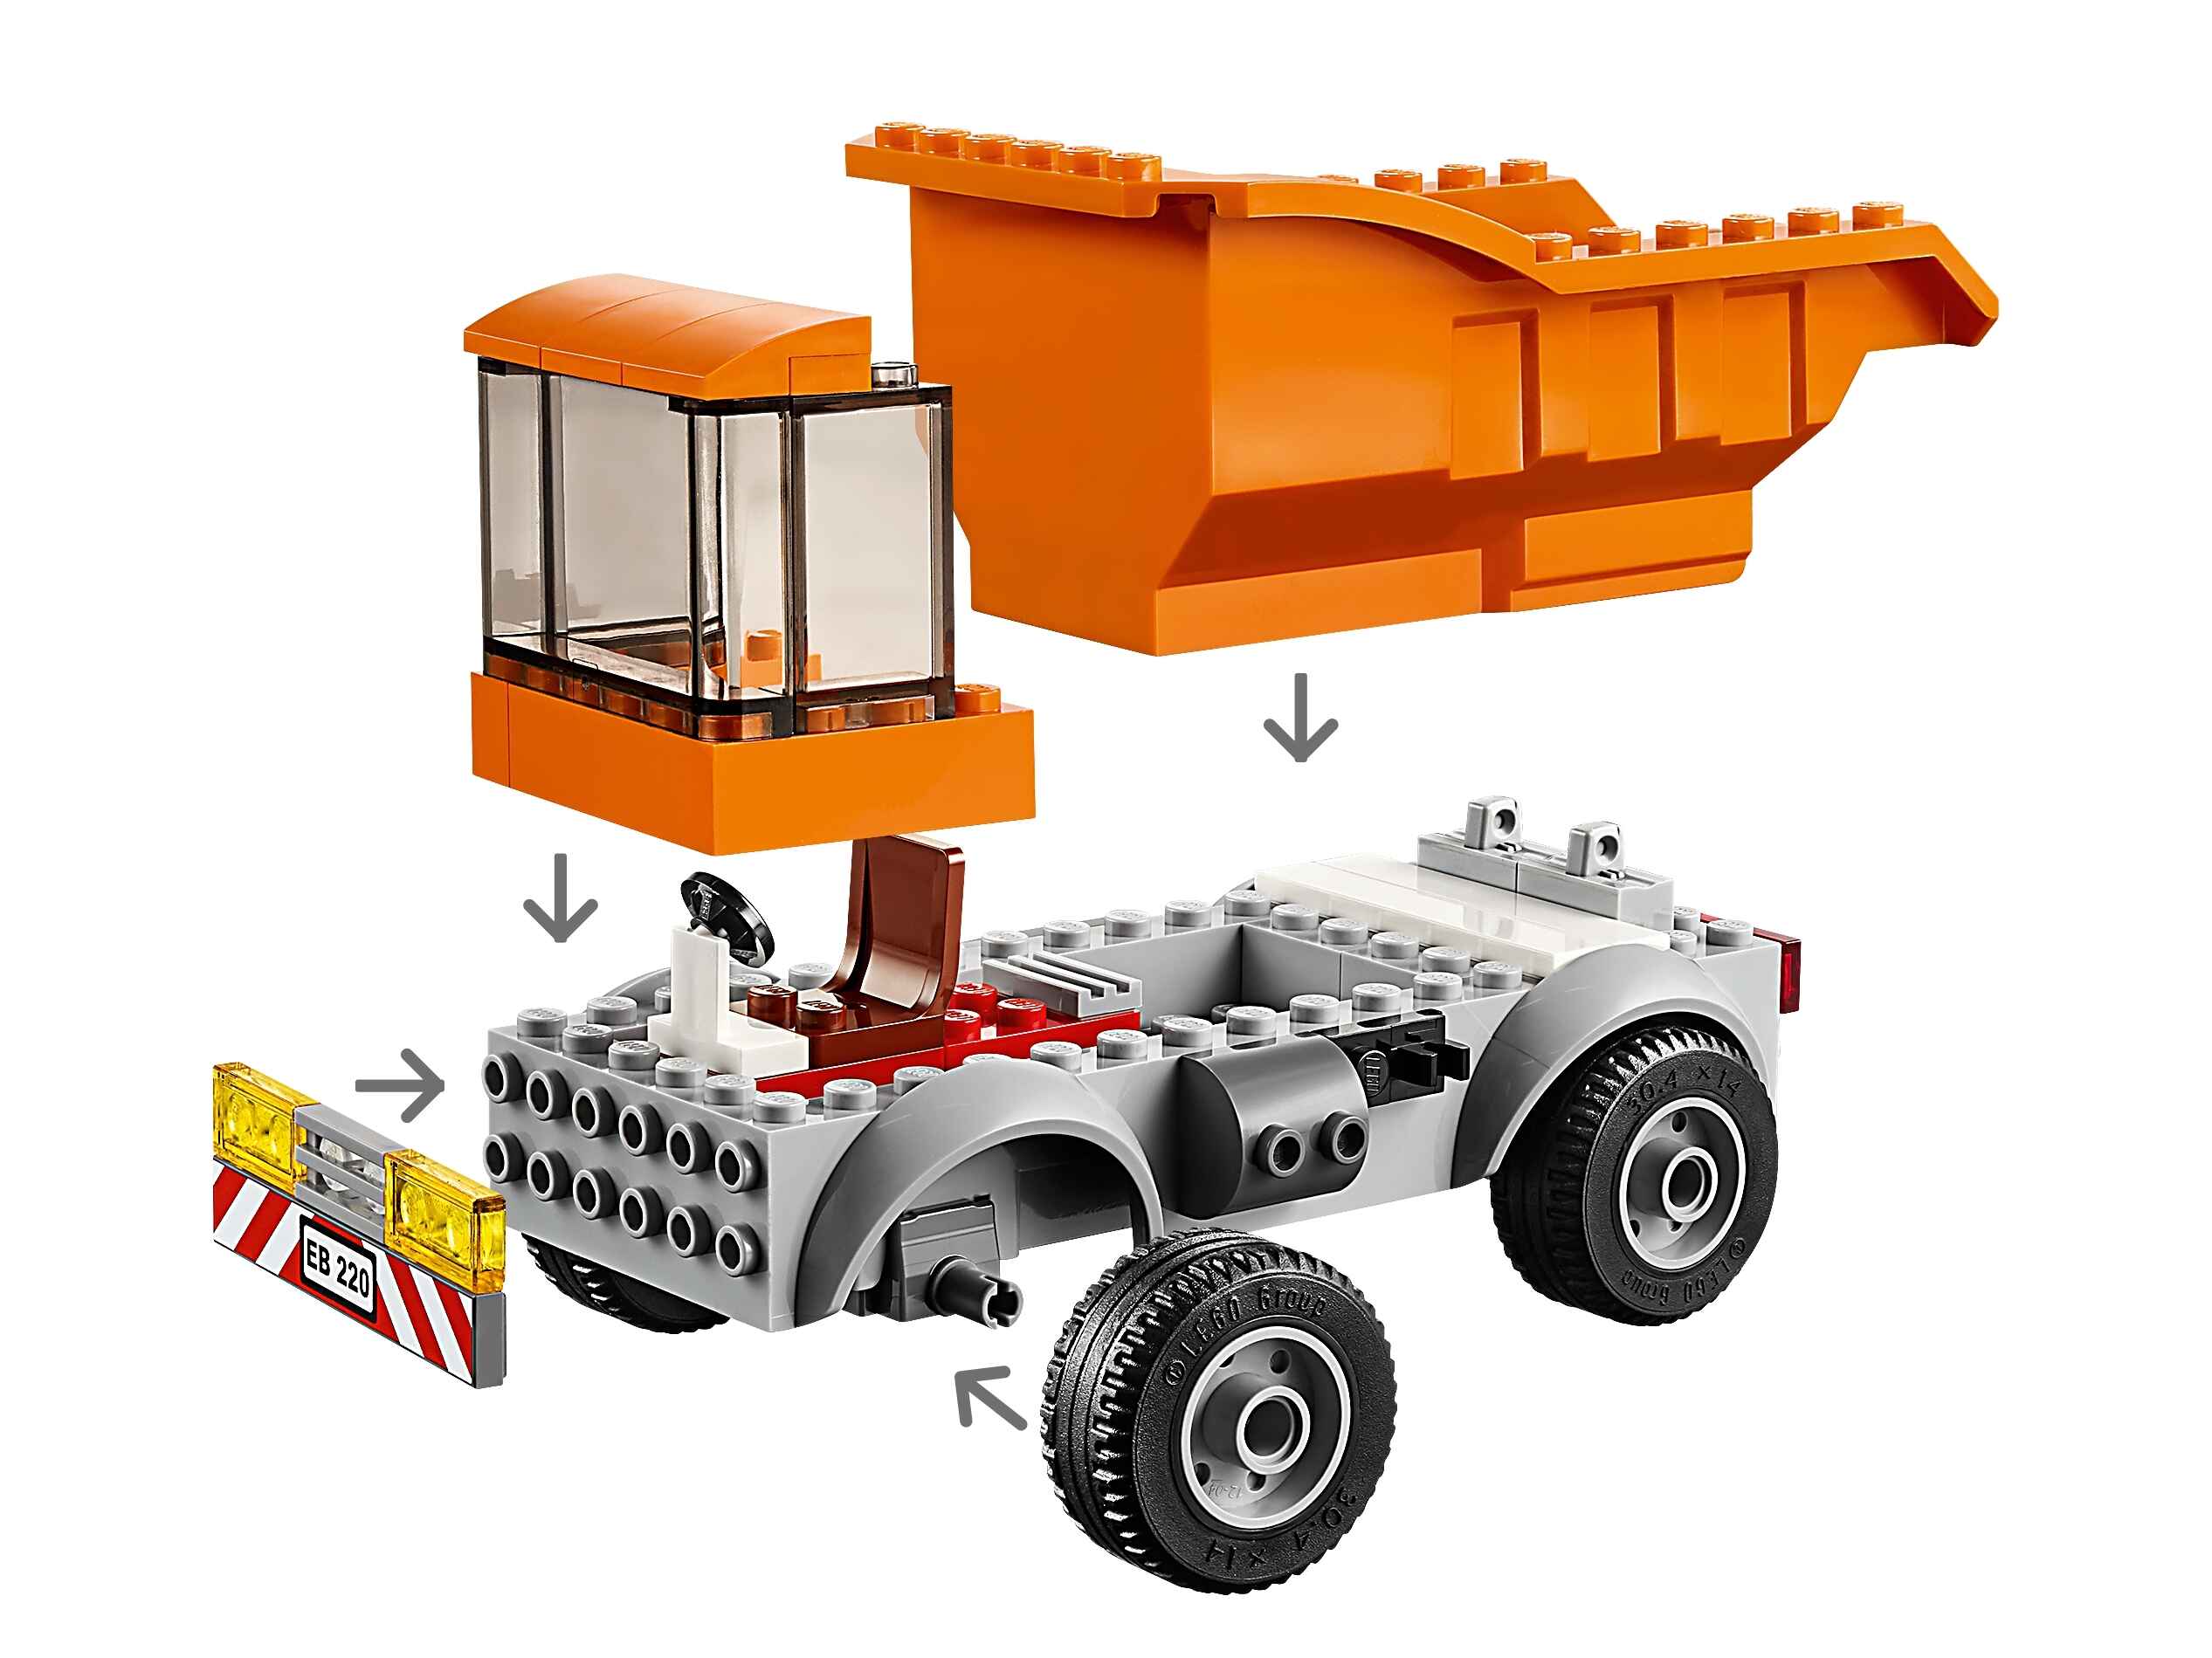 LEGO 60220 City Müllabfuhr mit 2 Müllarbeiter Minifiguren